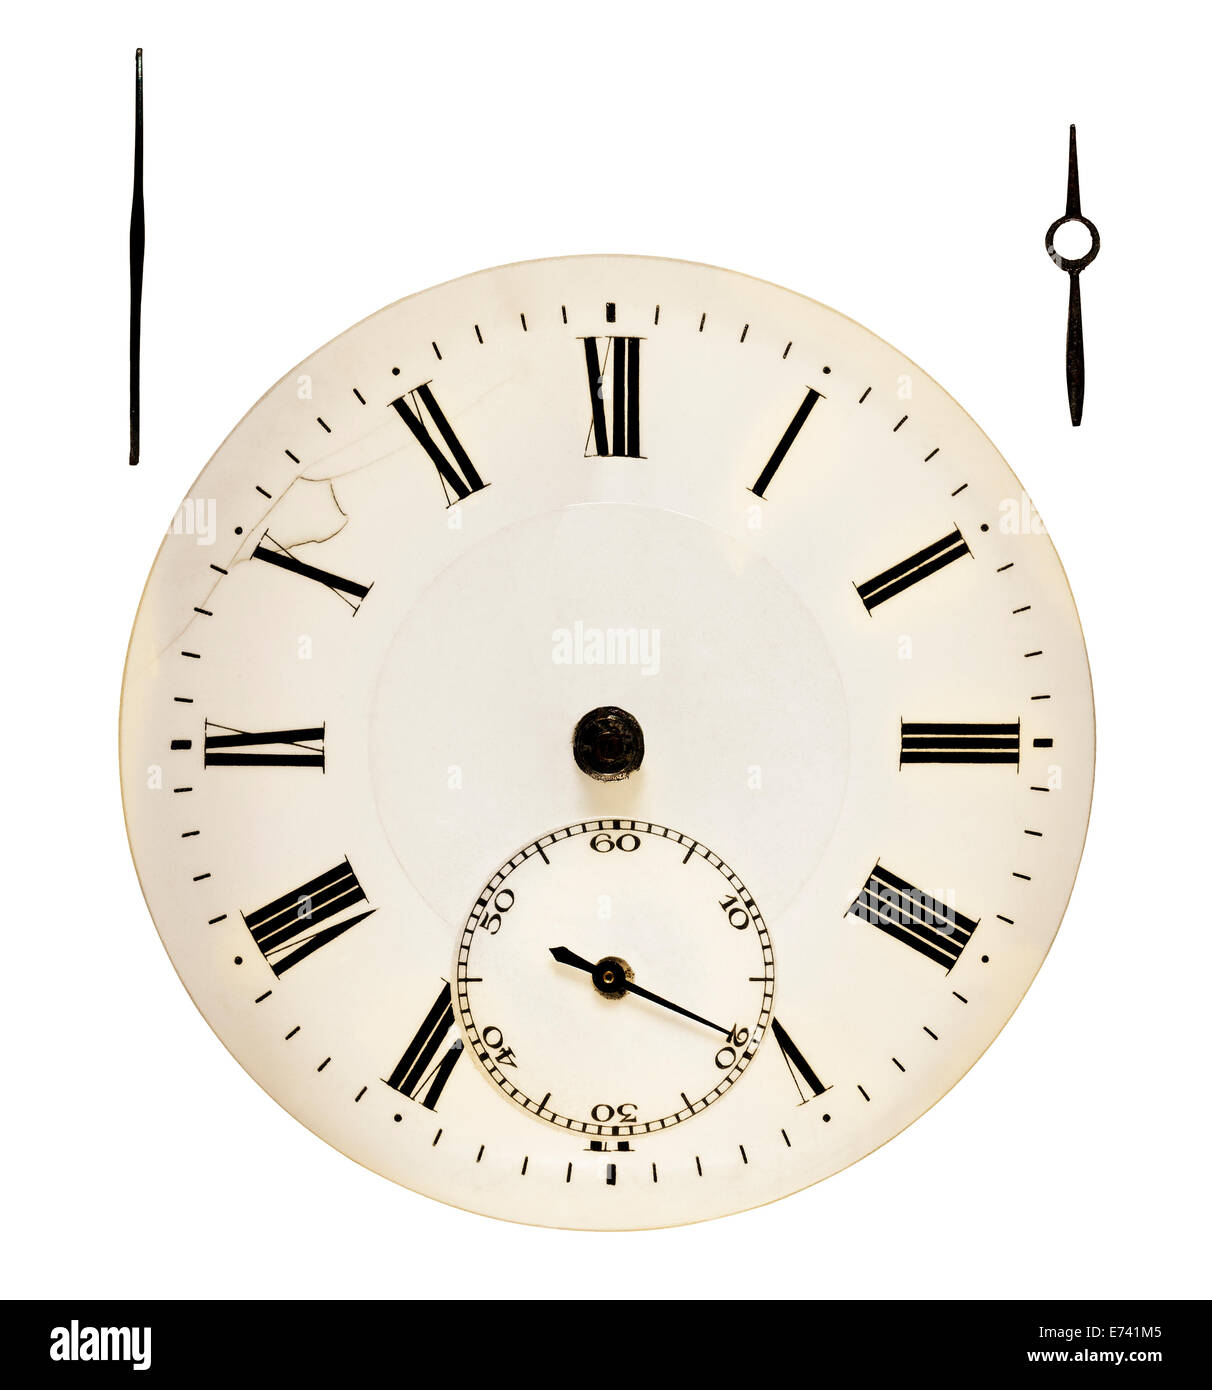 Horloge antique. Dans le sens horaire min heures with clipping path Banque D'Images